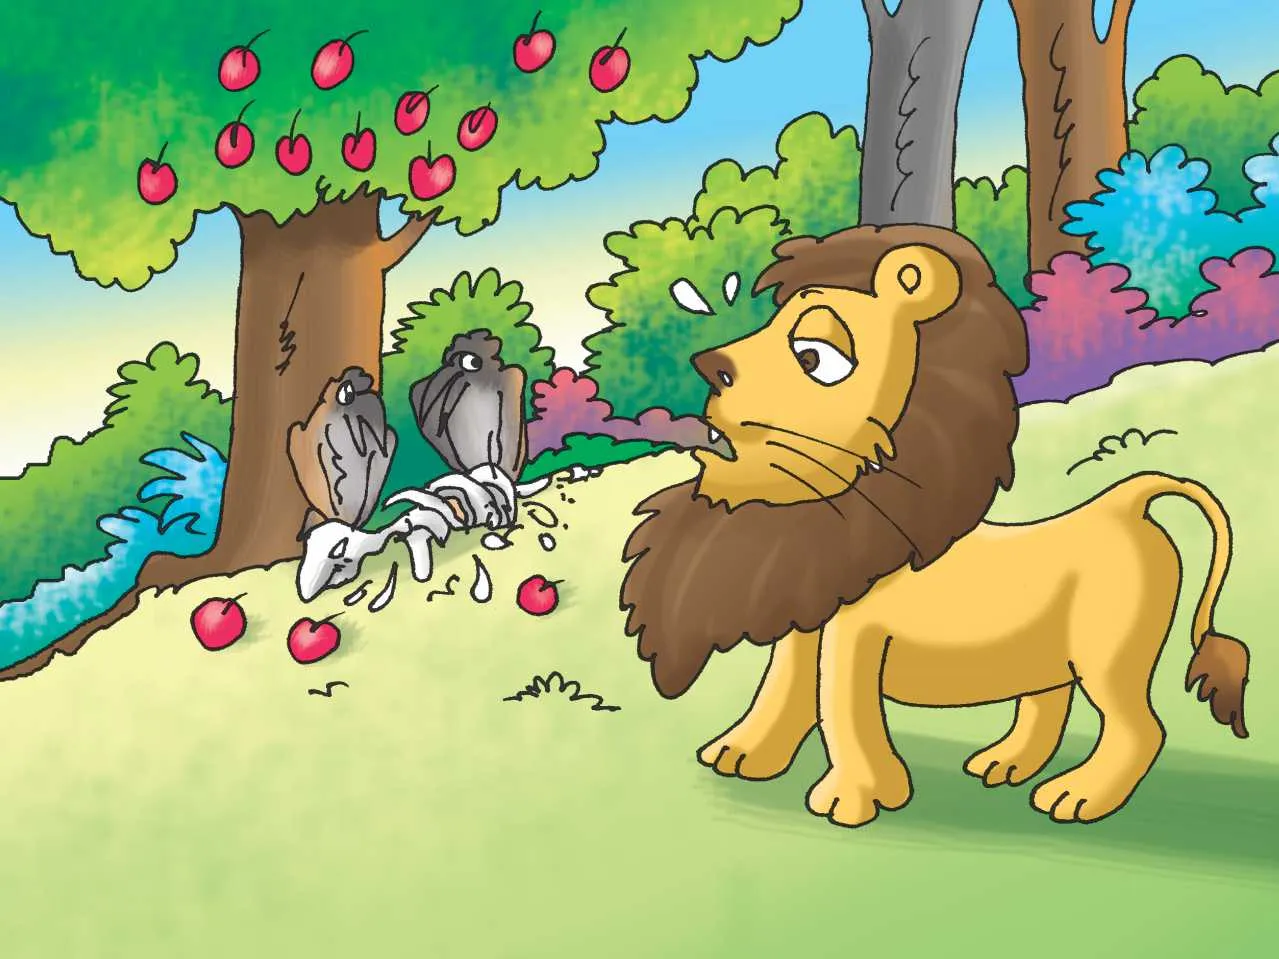 Lion and jackal cartoon image